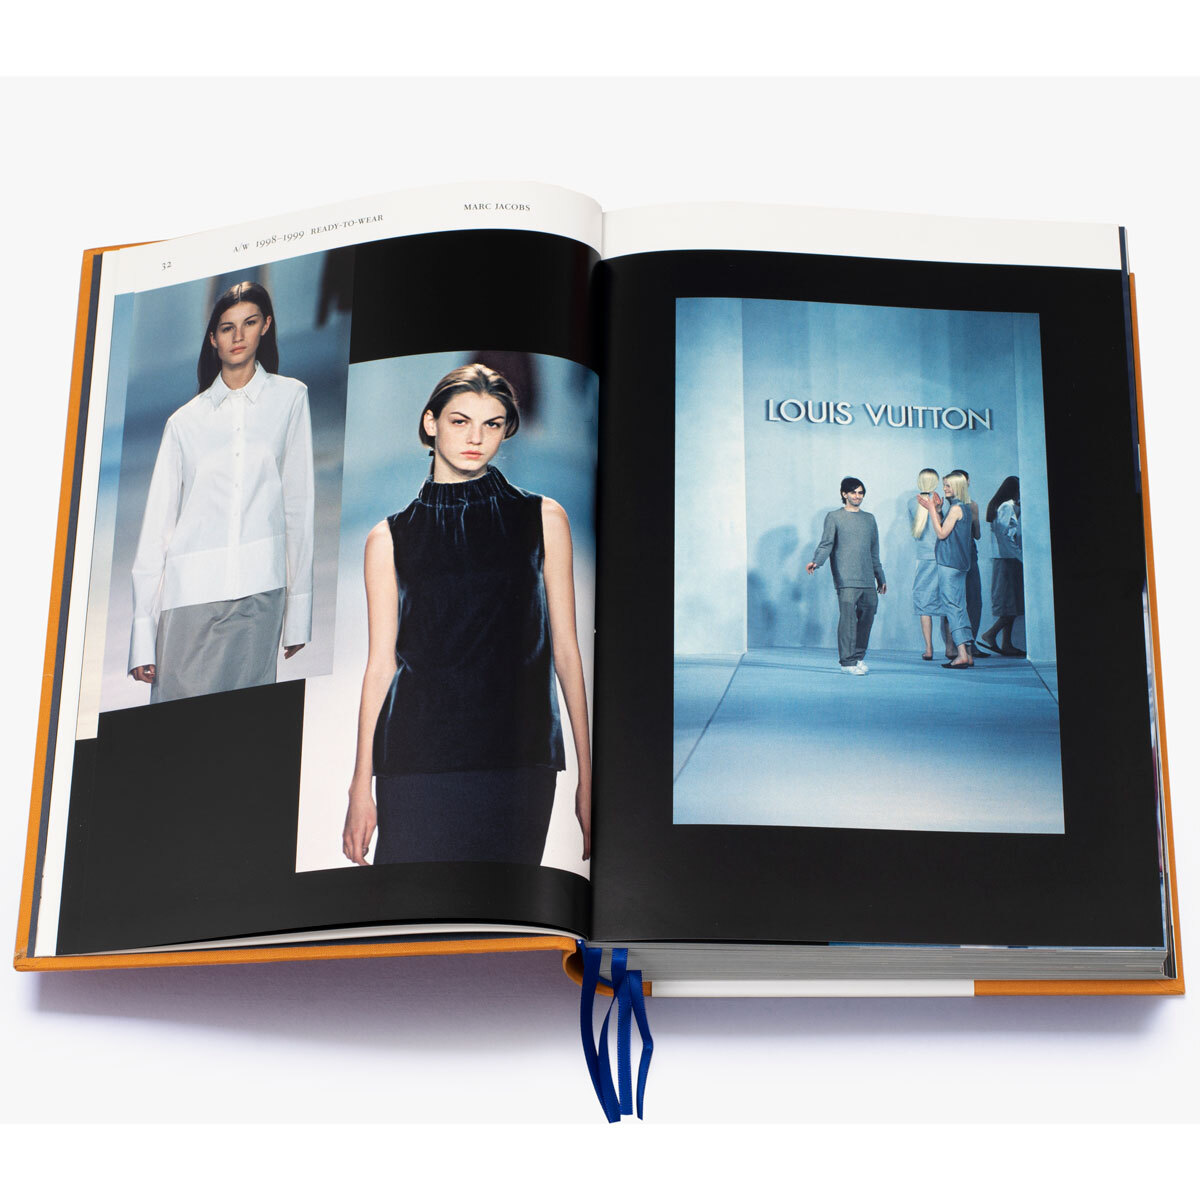 Buy Louis Vuitton Catwalk Book online in India